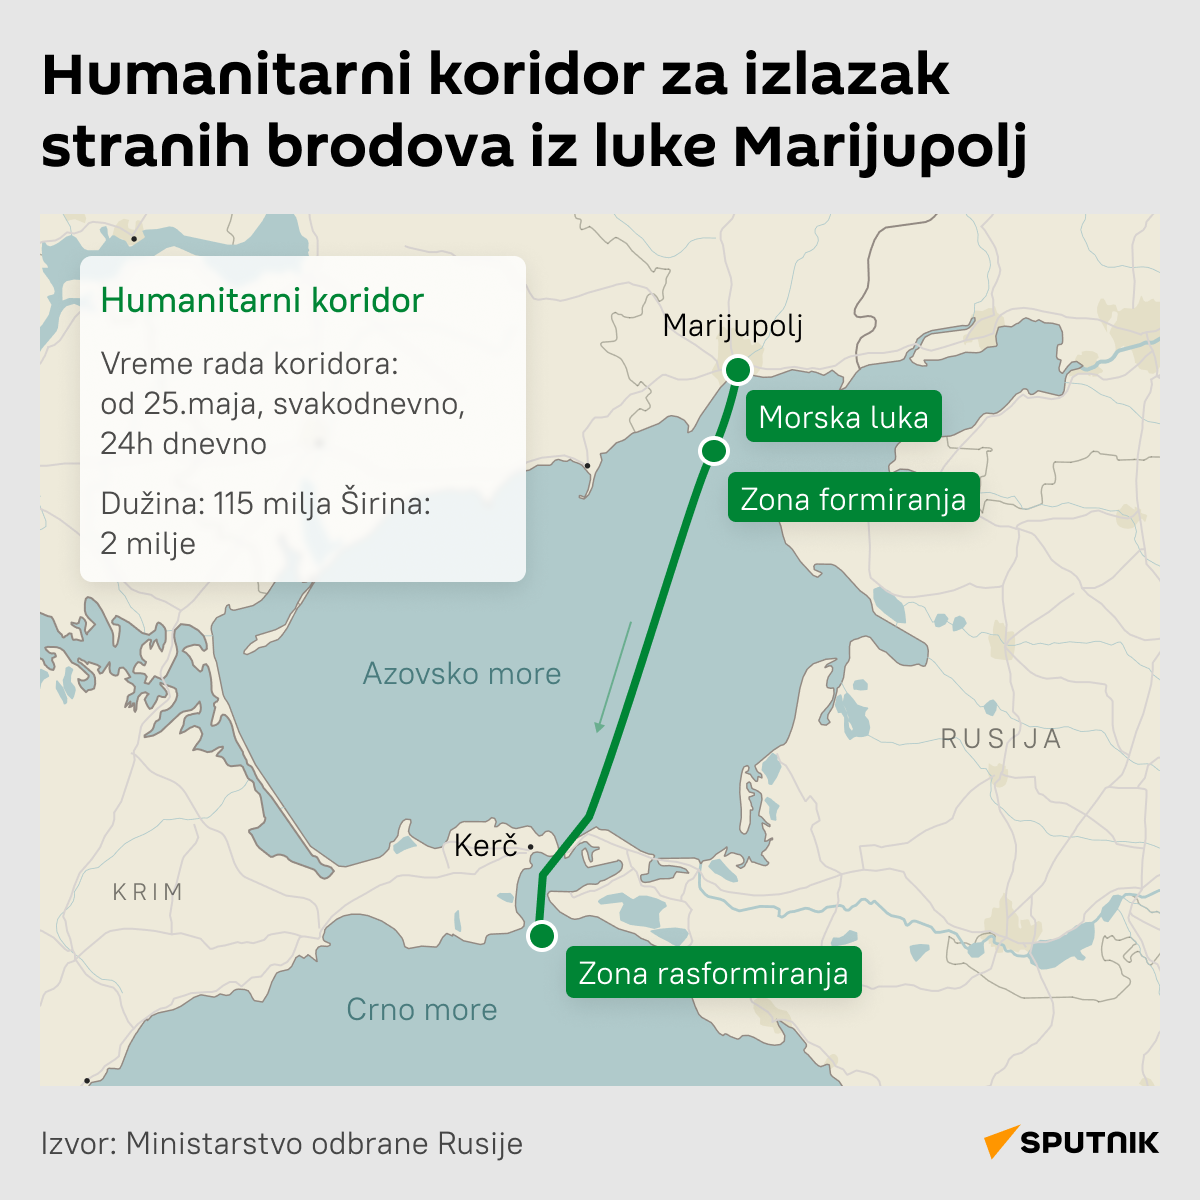 Humanitarni koridor za izlazak stranih brodova iz luke Marijupolj  -  Infografika  LATINICA desk  - Sputnik Srbija